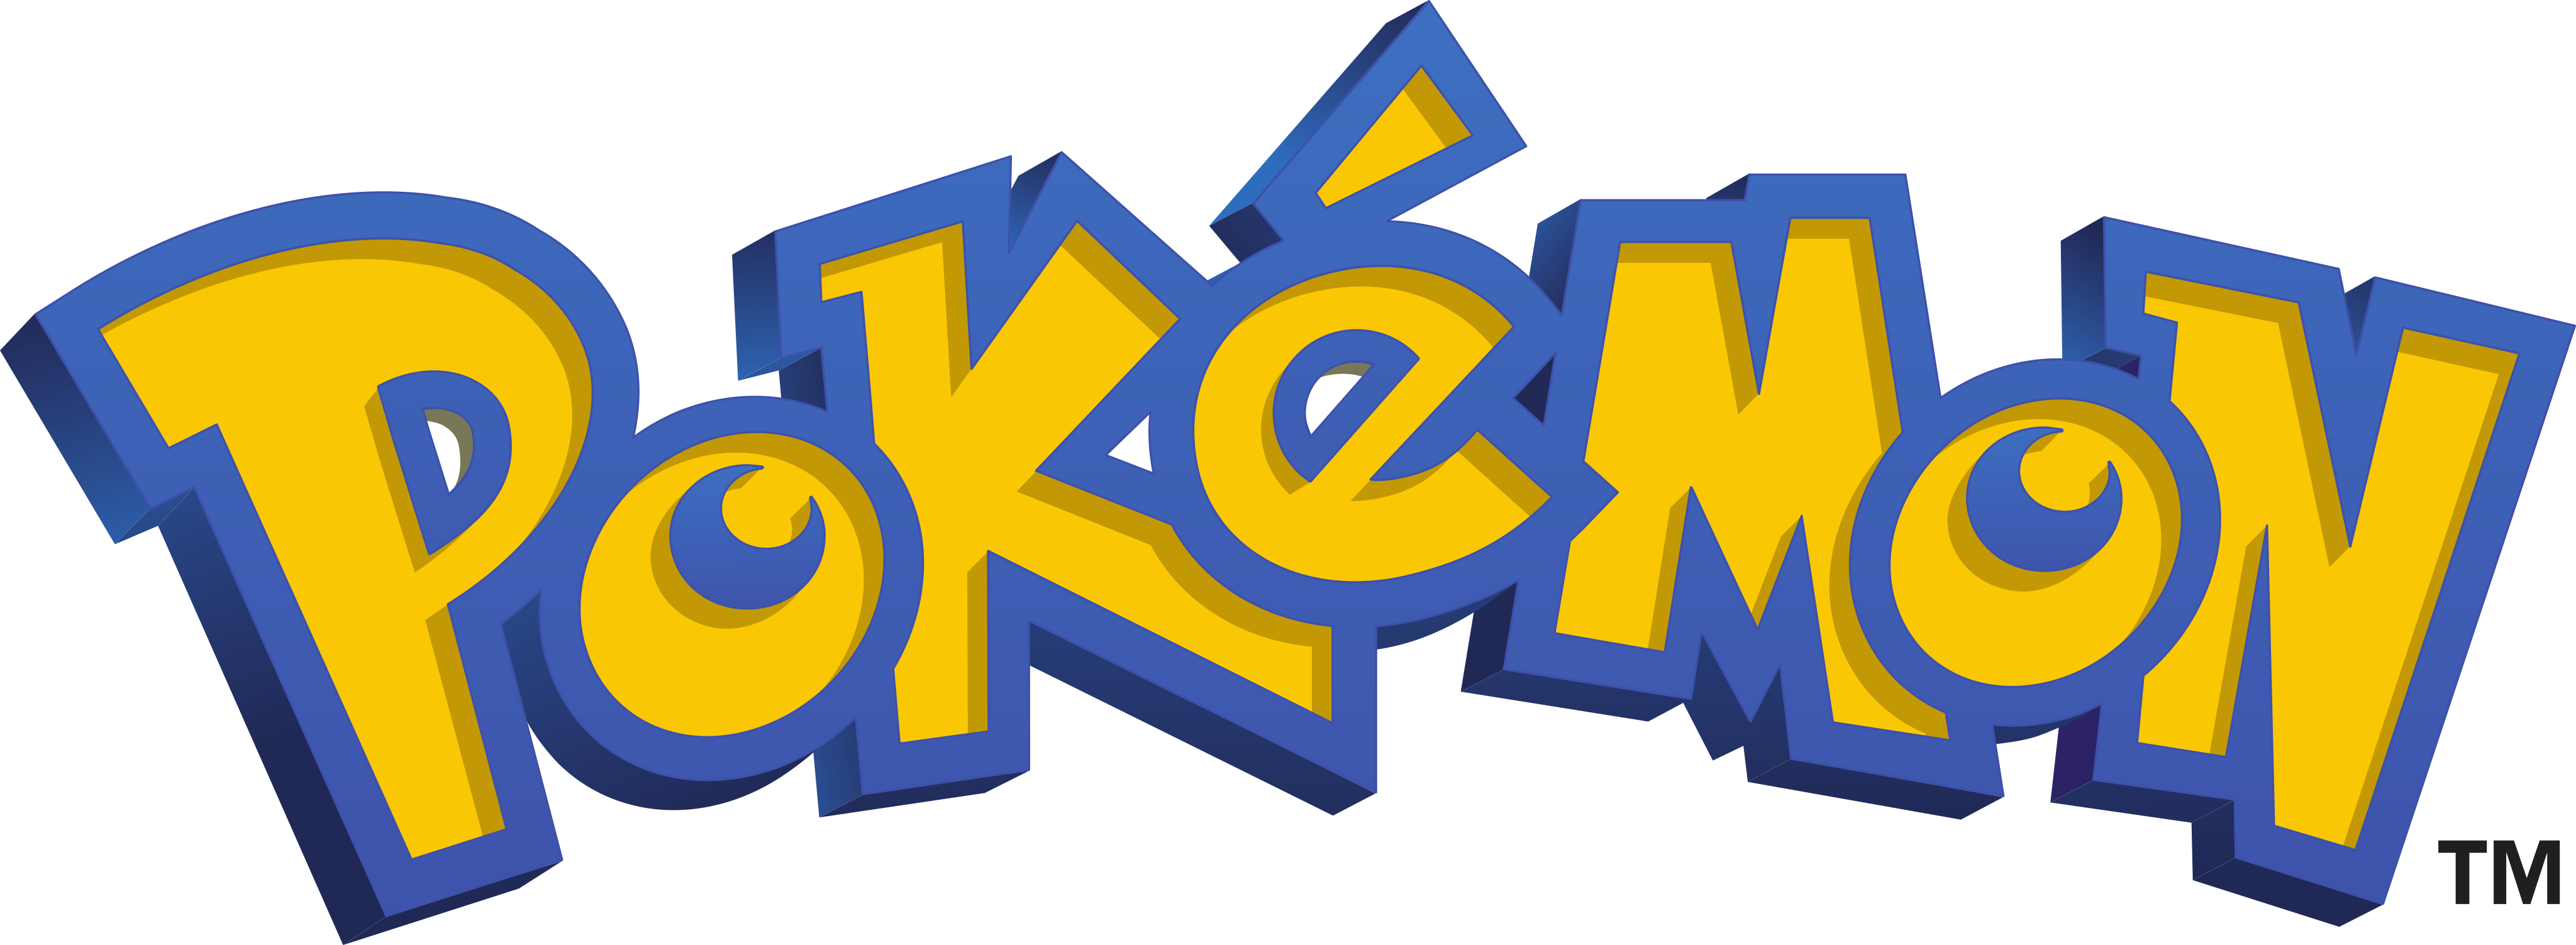 VARIADO: Nomes e Fotos dos Pokémons